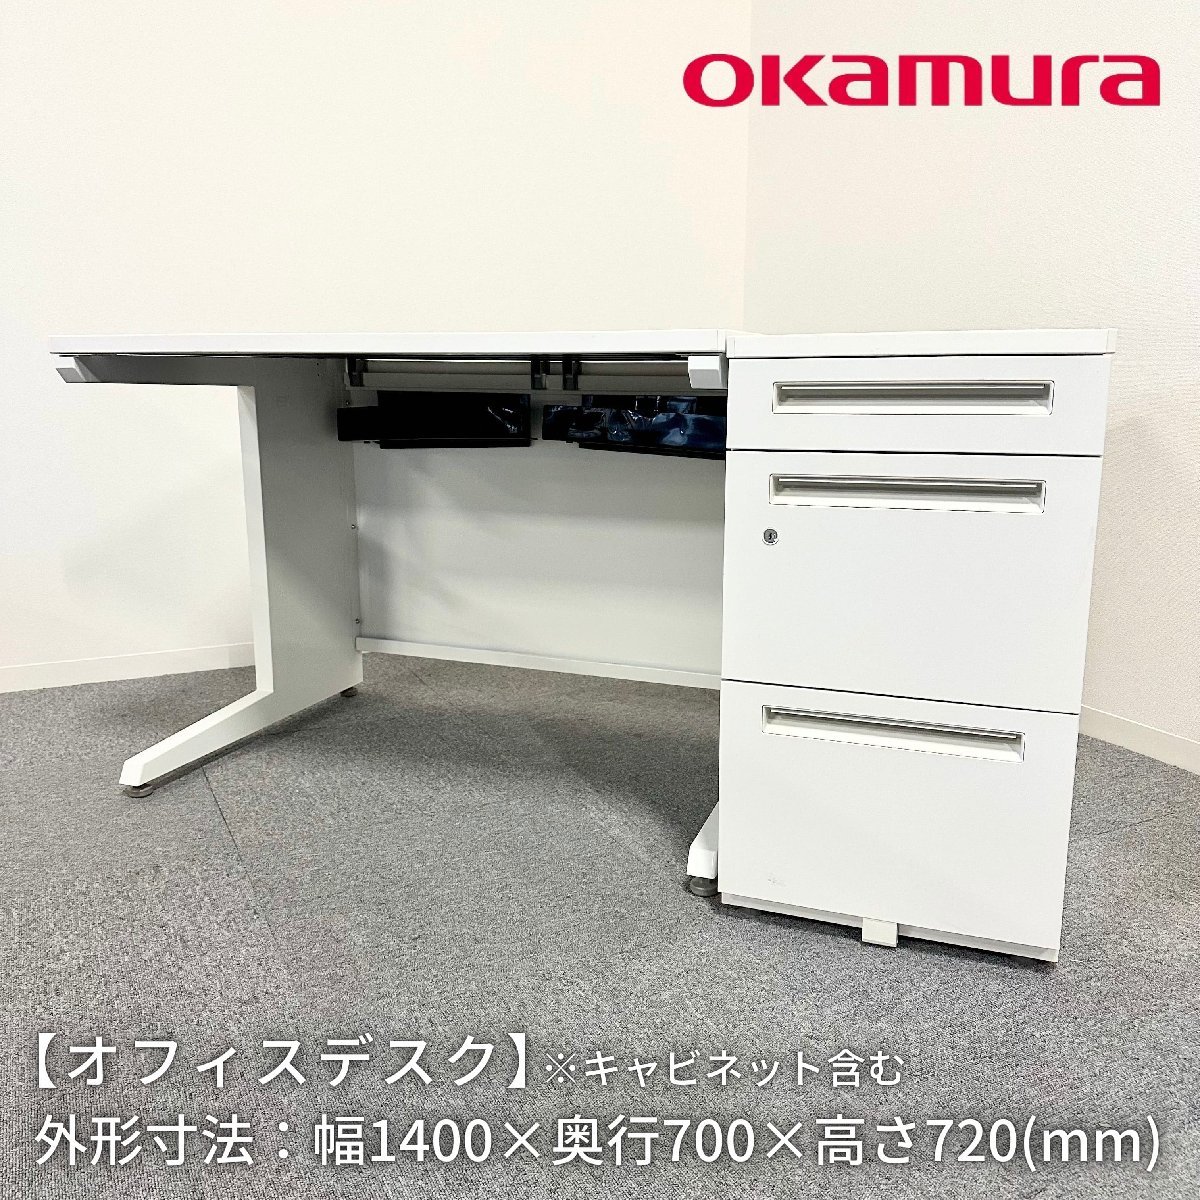  офис стол /OKAMURA/UCHIDA/ ширина 1400mm× глубина 700mm× высота 720mm/ шкаф имеется / офисный стол / с ящиками с одной стороны стол [ доставка отдельно предварительный расчет ]1189